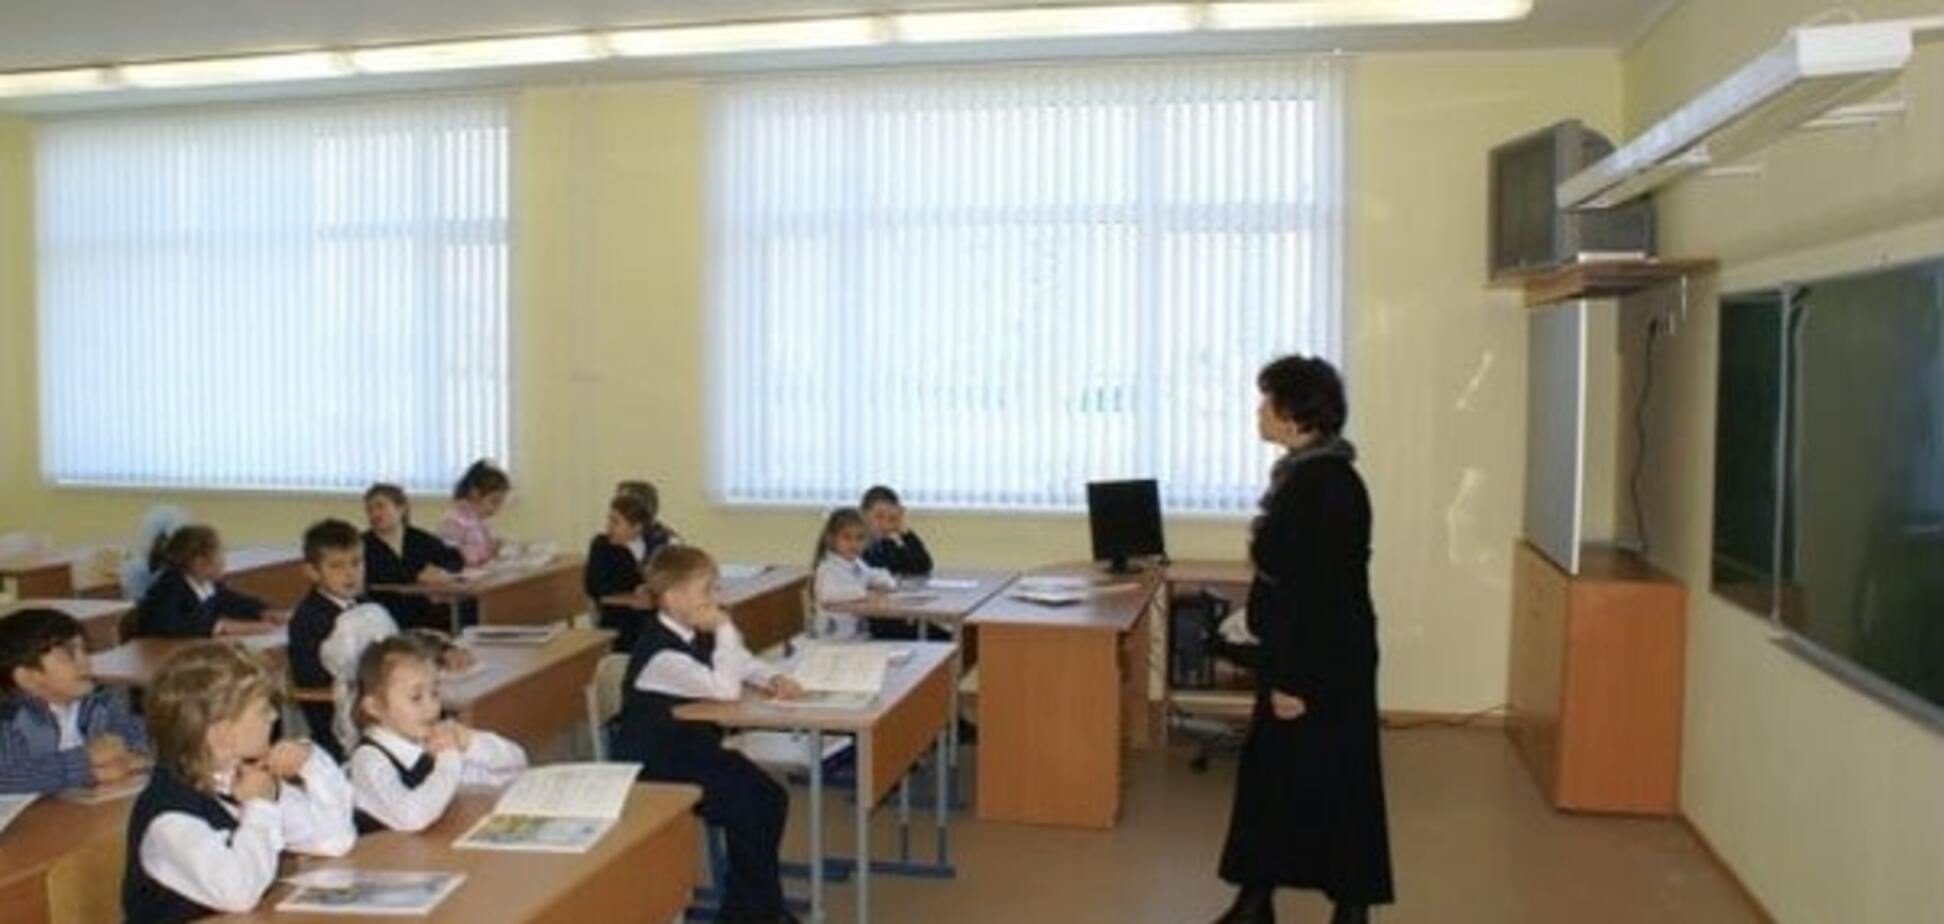 Праздник для школьников: в мэрии Киева отказались от отработки карантина            